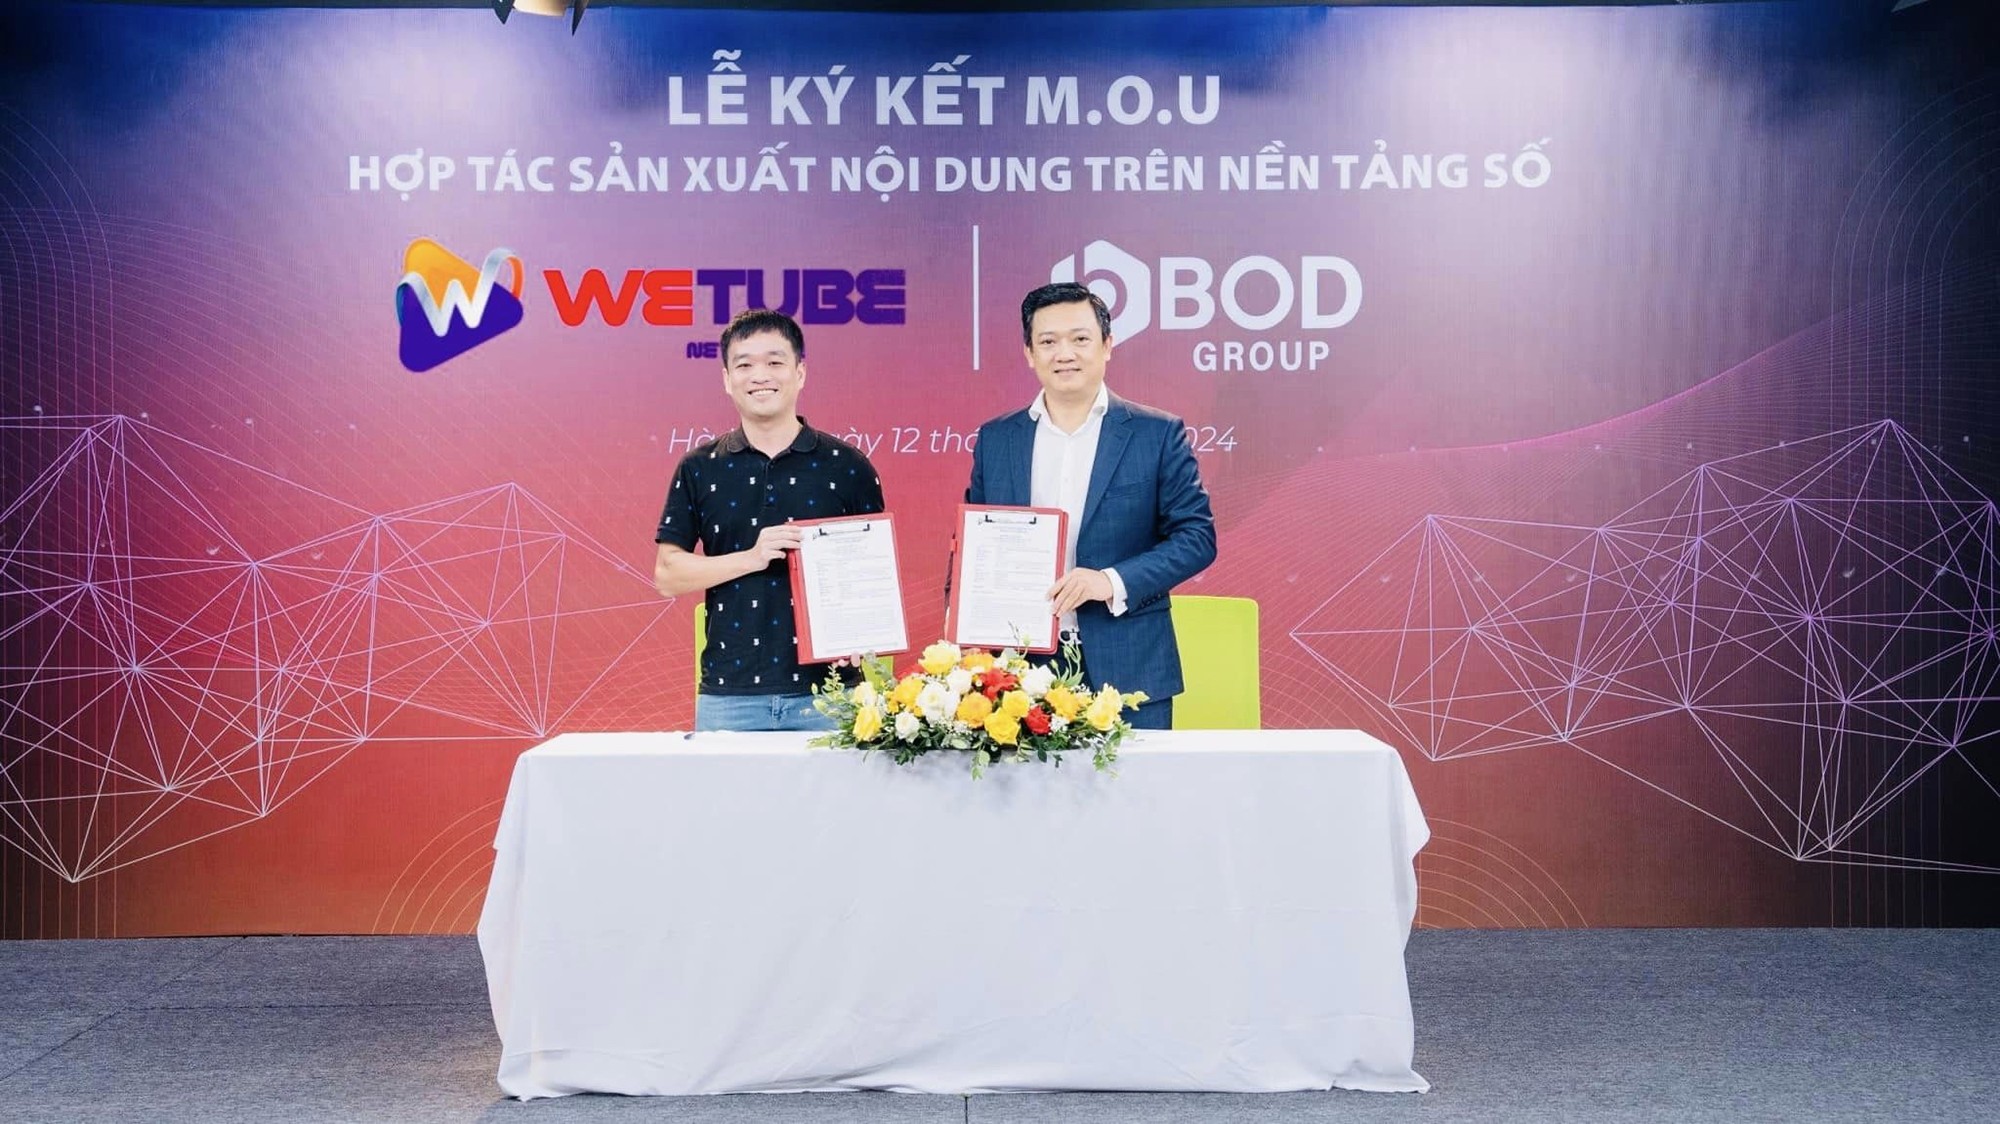 WETUBE - Tự hào là Công ty Cổ phần Công nghệ và Giải trí uy tín tại Việt Nam